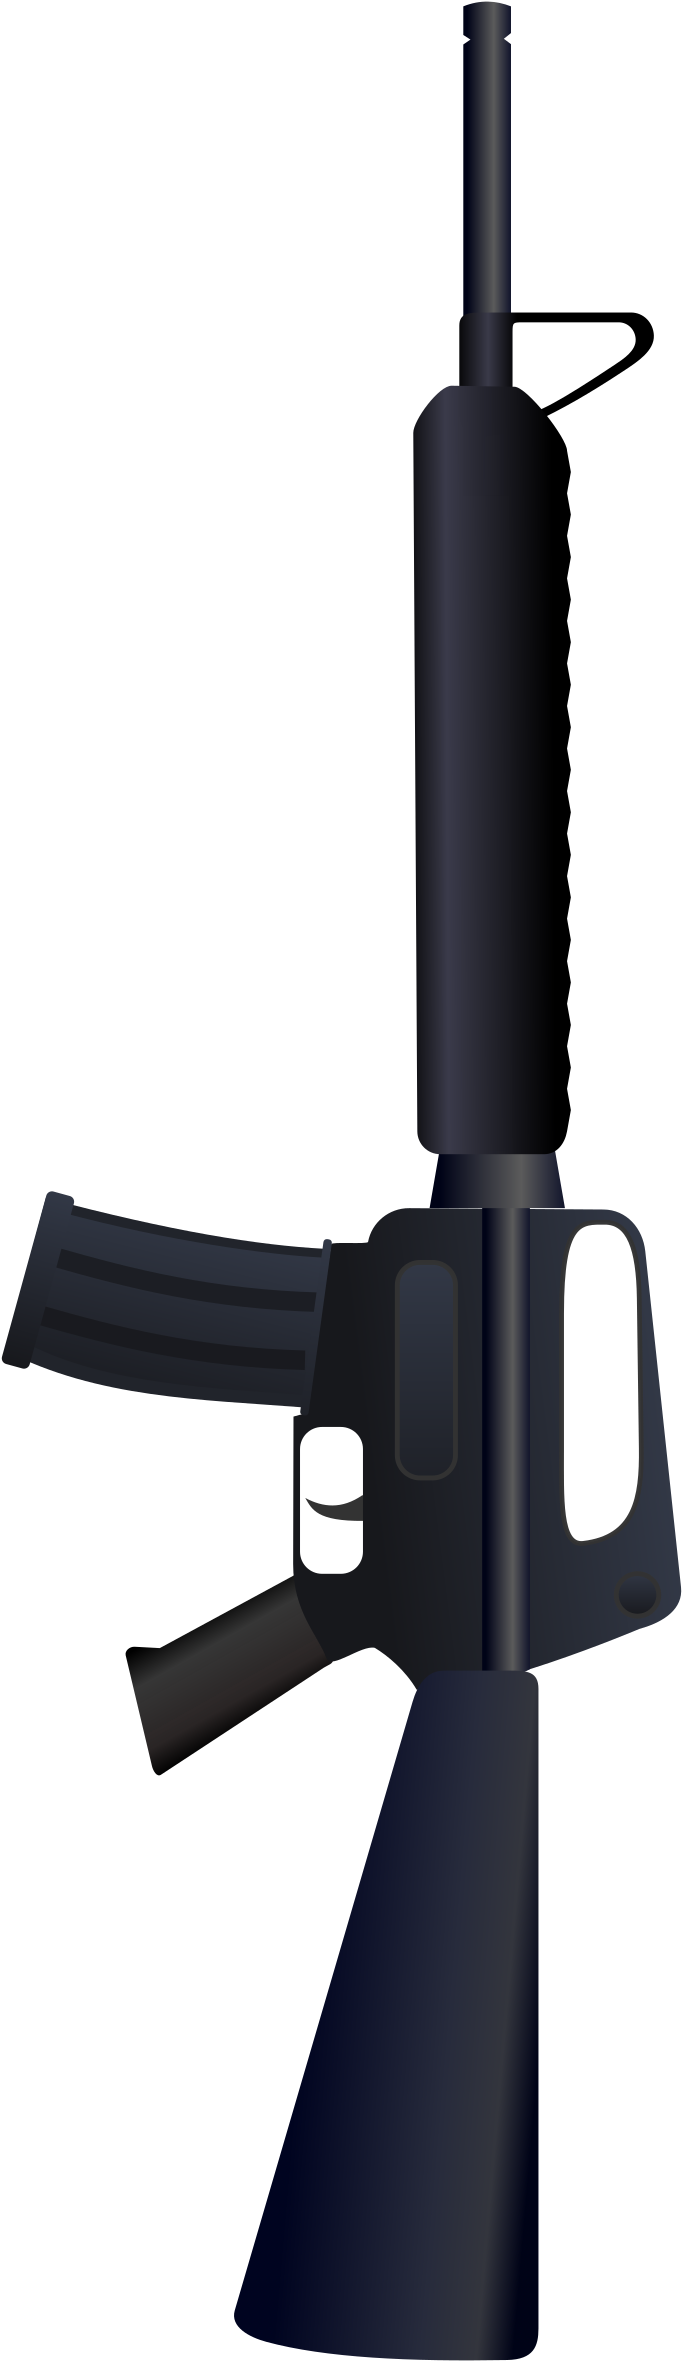 Big Image - Colt Ar-15 (1697x2400)